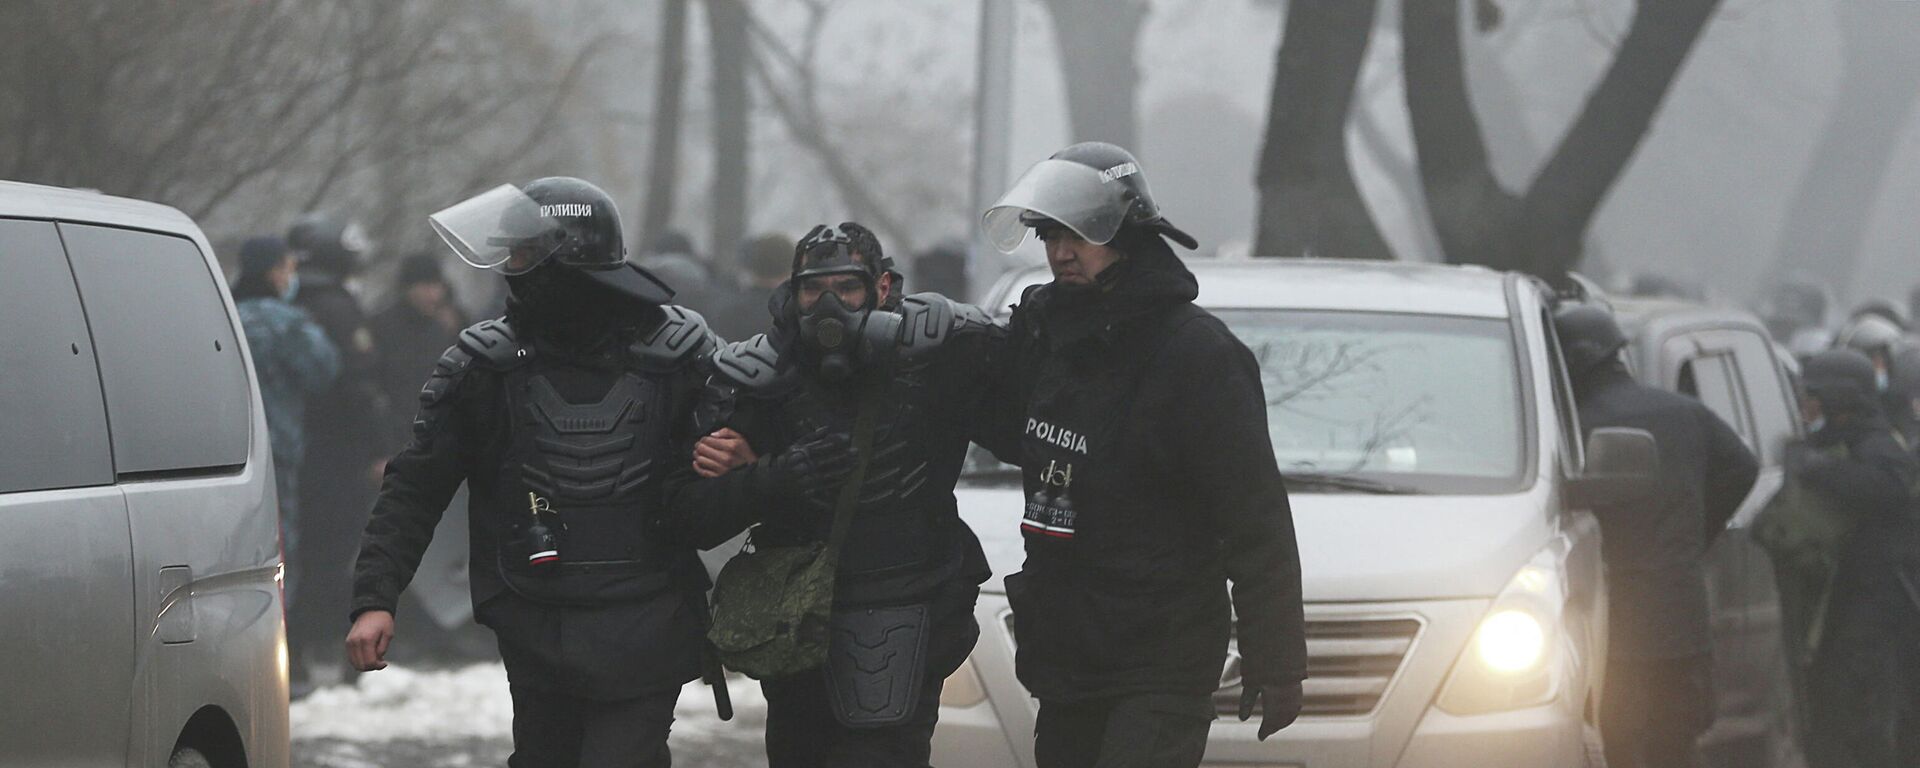 Kazachstano saugumo pajėgos per protestus Almatoje, 2022 metų sausio 5 dieną - Sputnik Lietuva, 1920, 07.01.2022